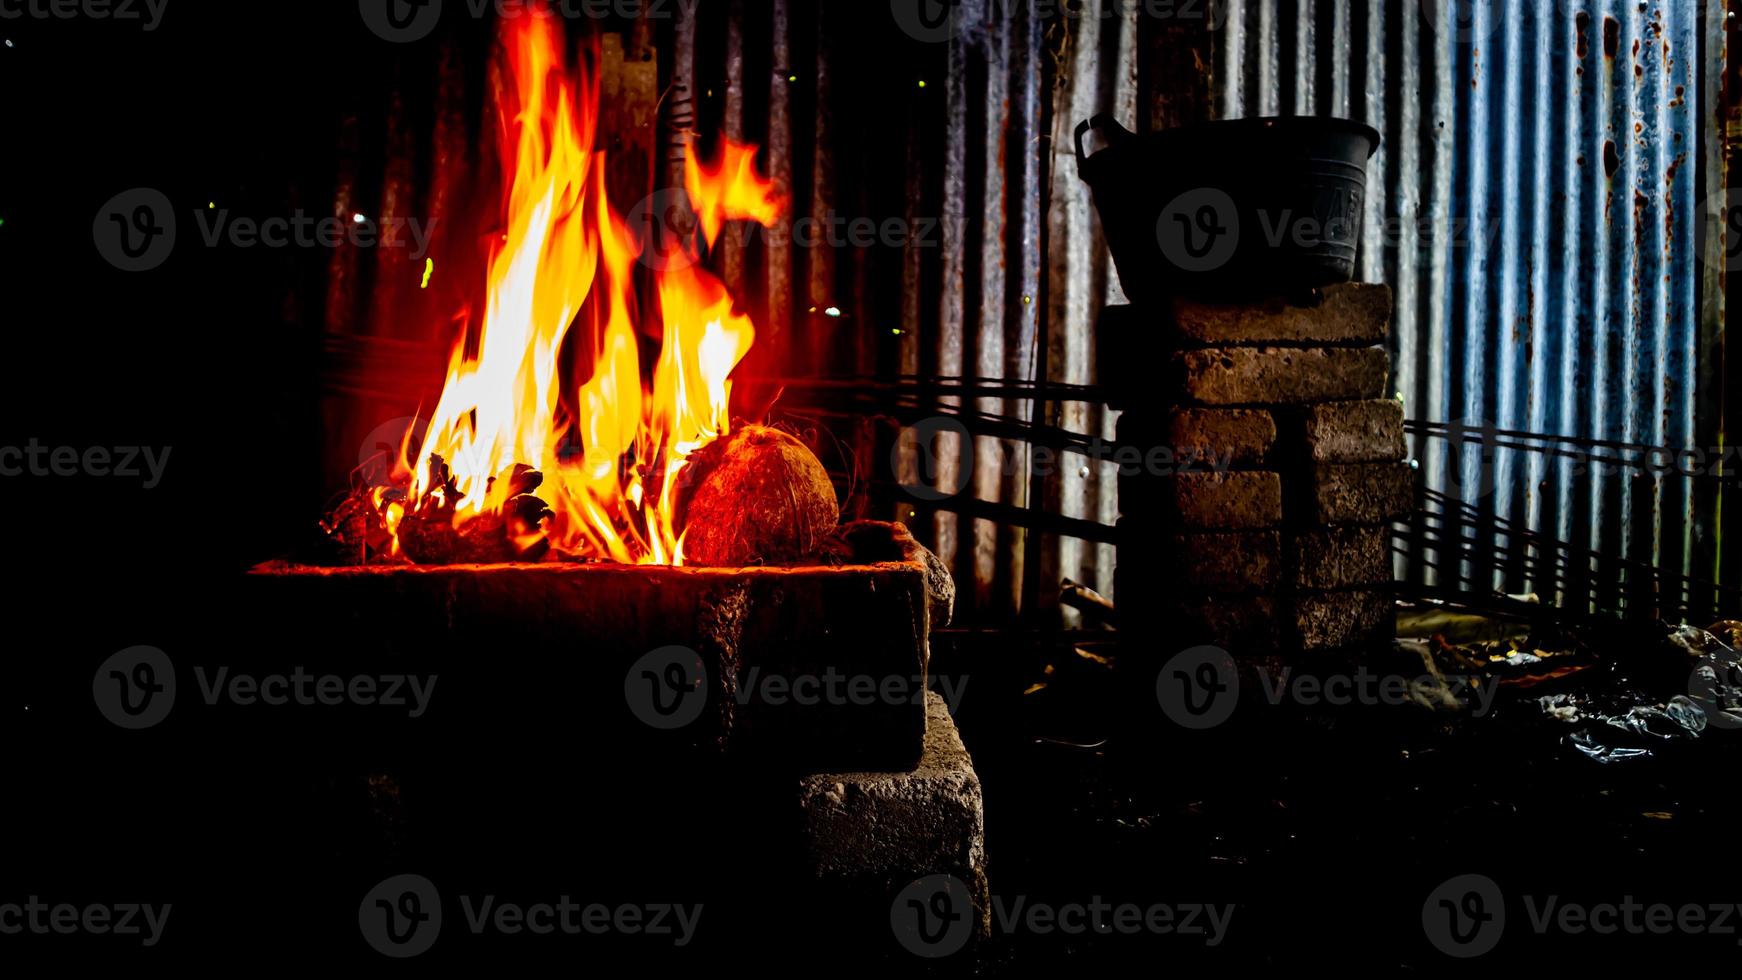 fuego ardiente en el horno foto